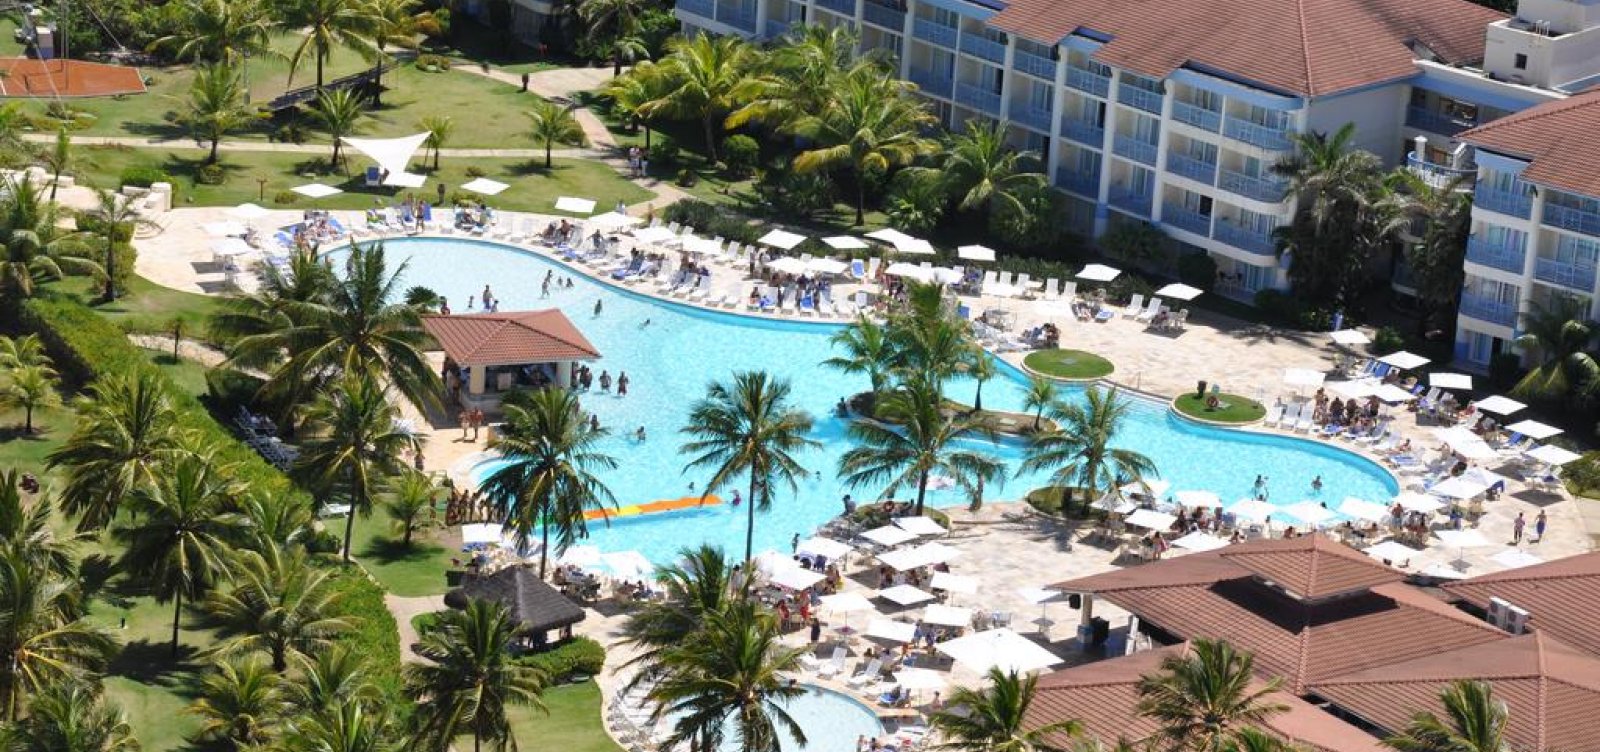 Coronavírus: Resort Costa do Sauípe fechará por 40 dias 